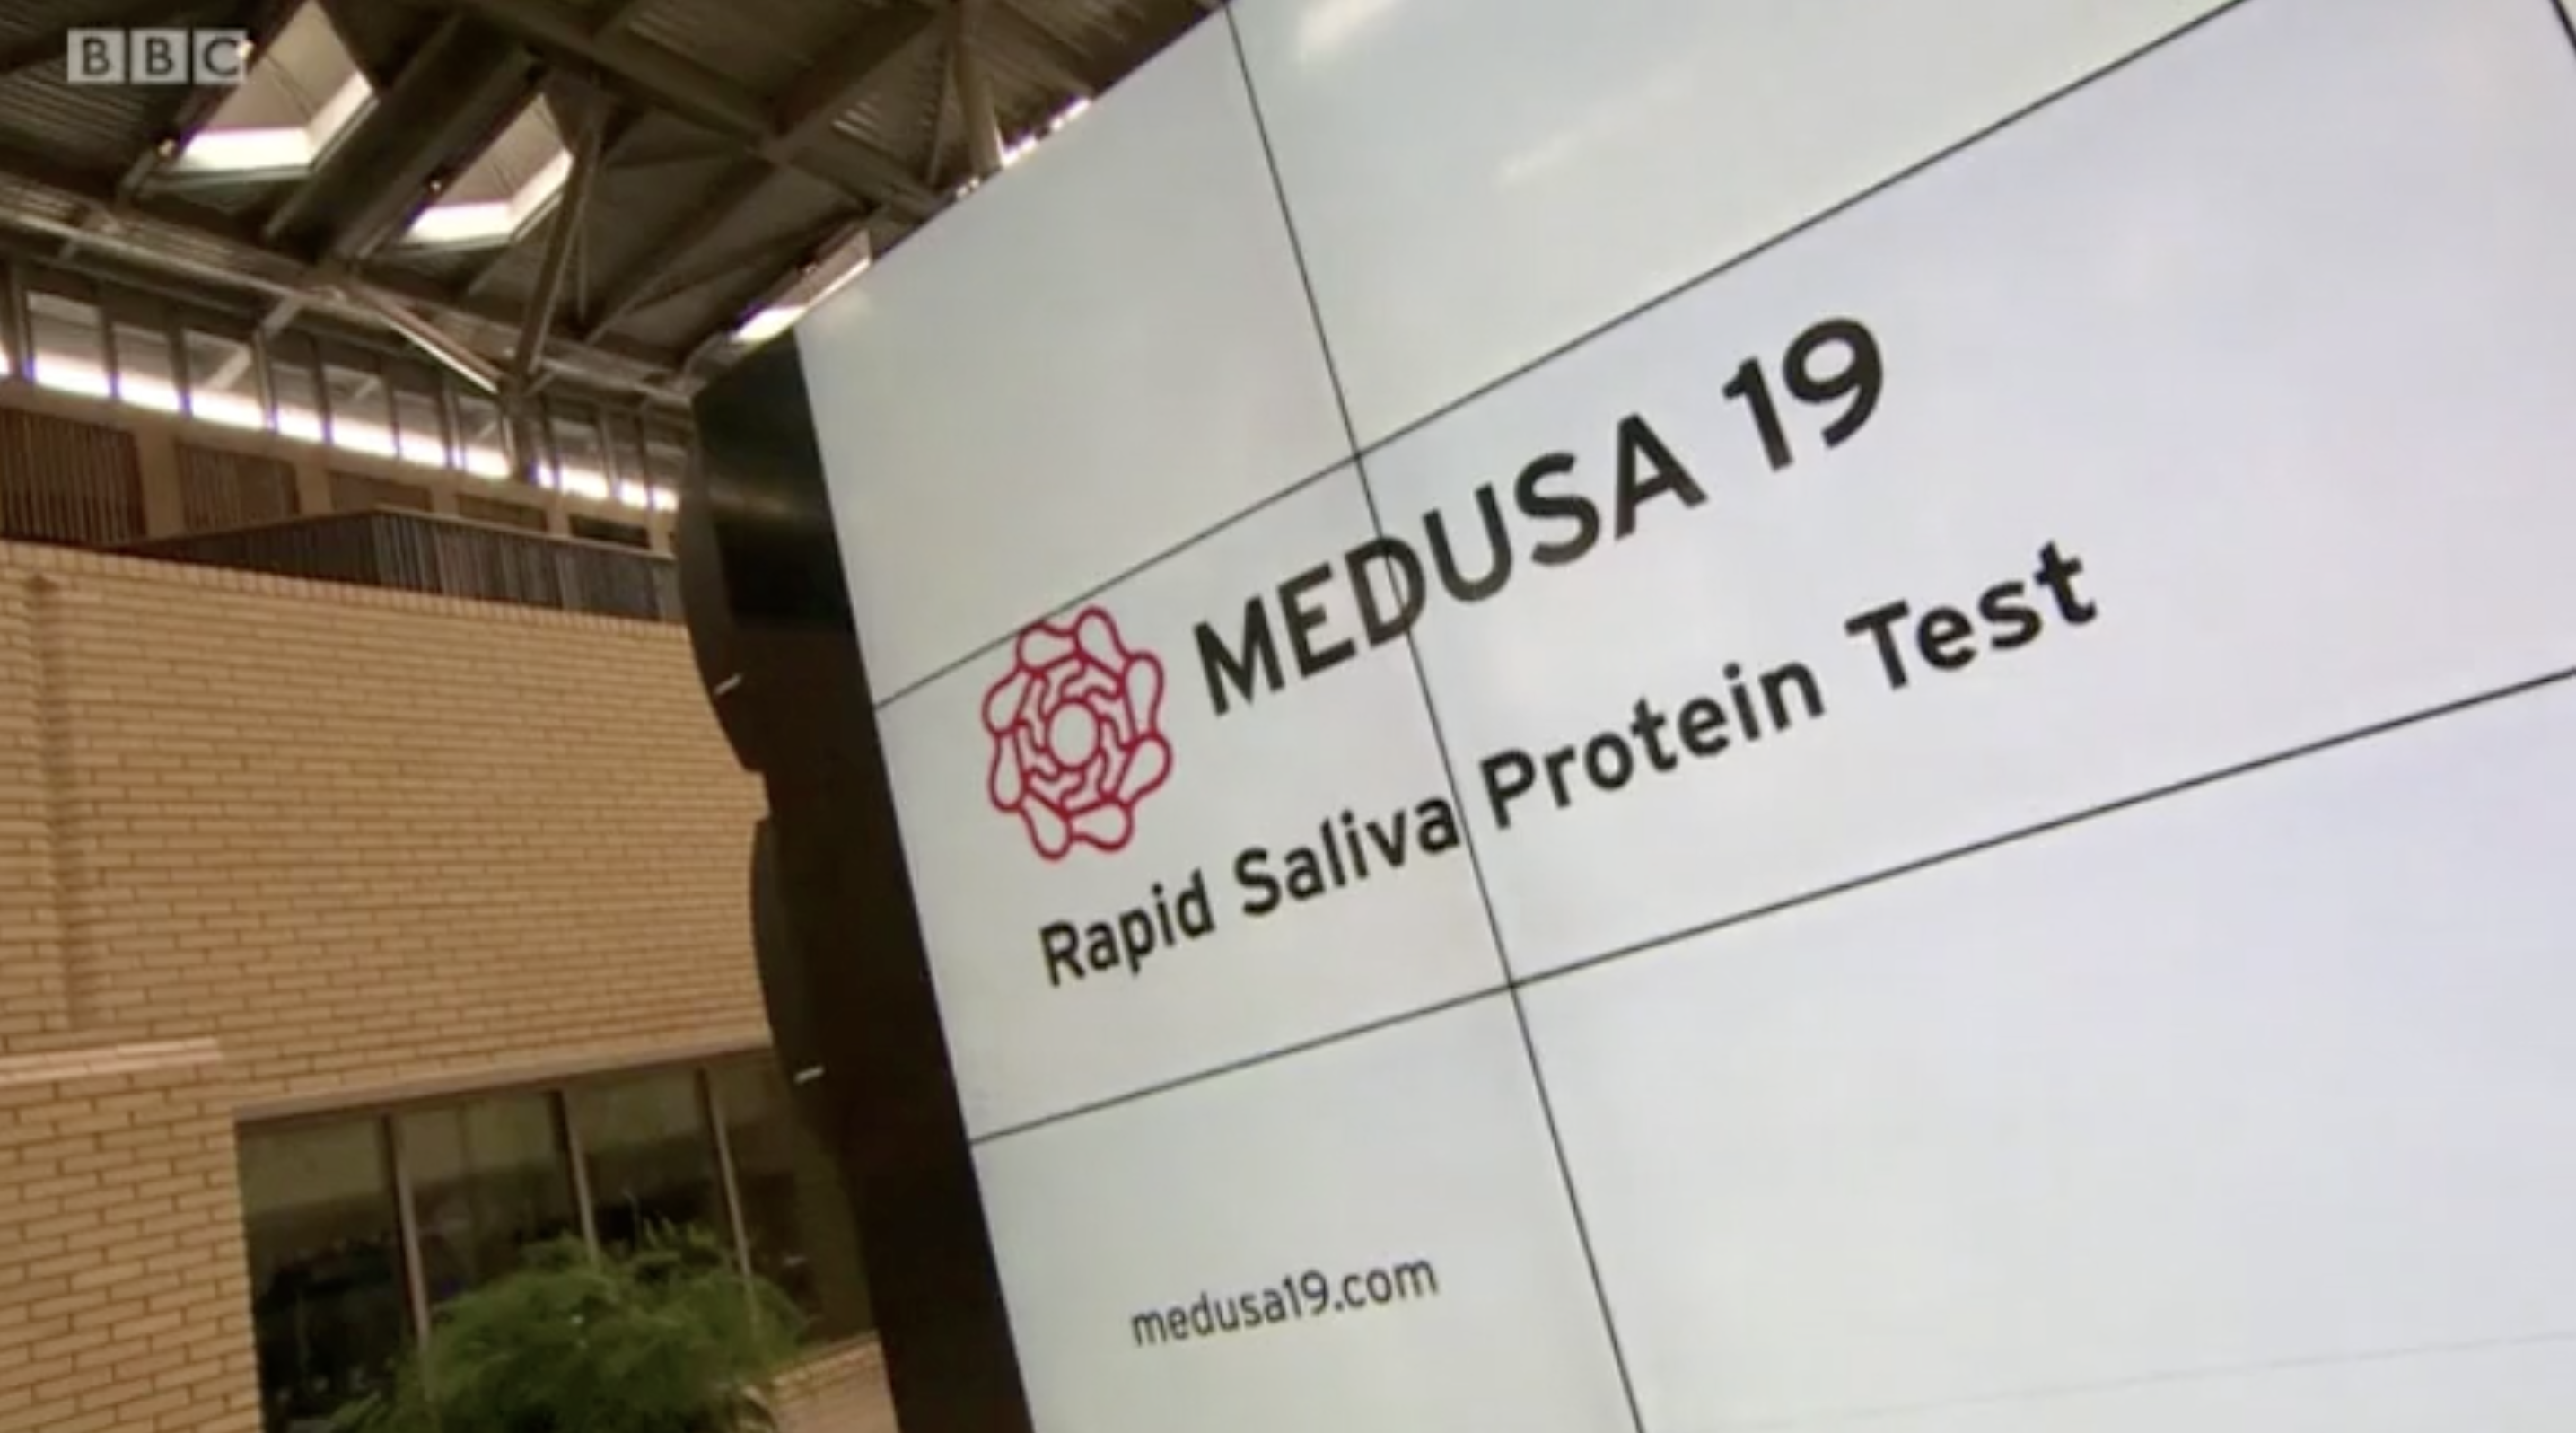 Medusa 19 rapid saliva protein test